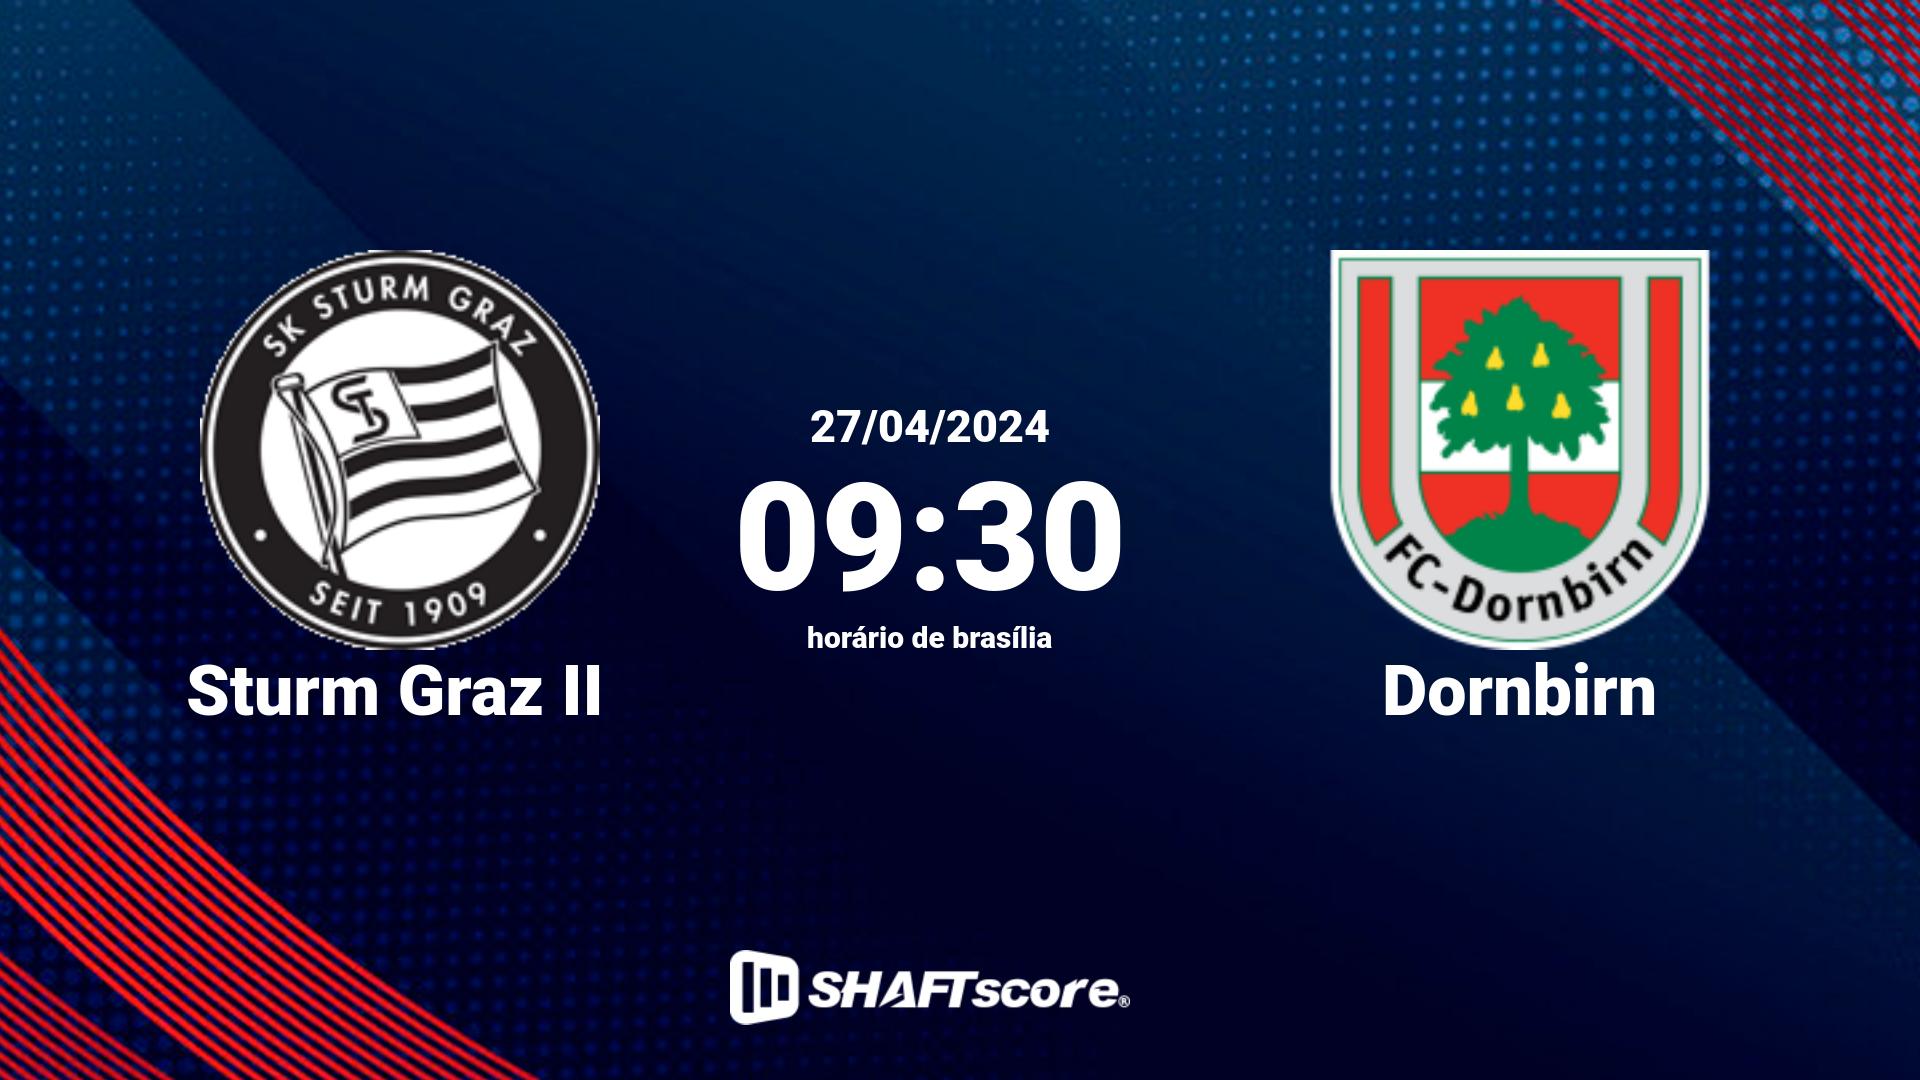 Estatísticas do jogo Sturm Graz II vs Dornbirn 27.04 09:30